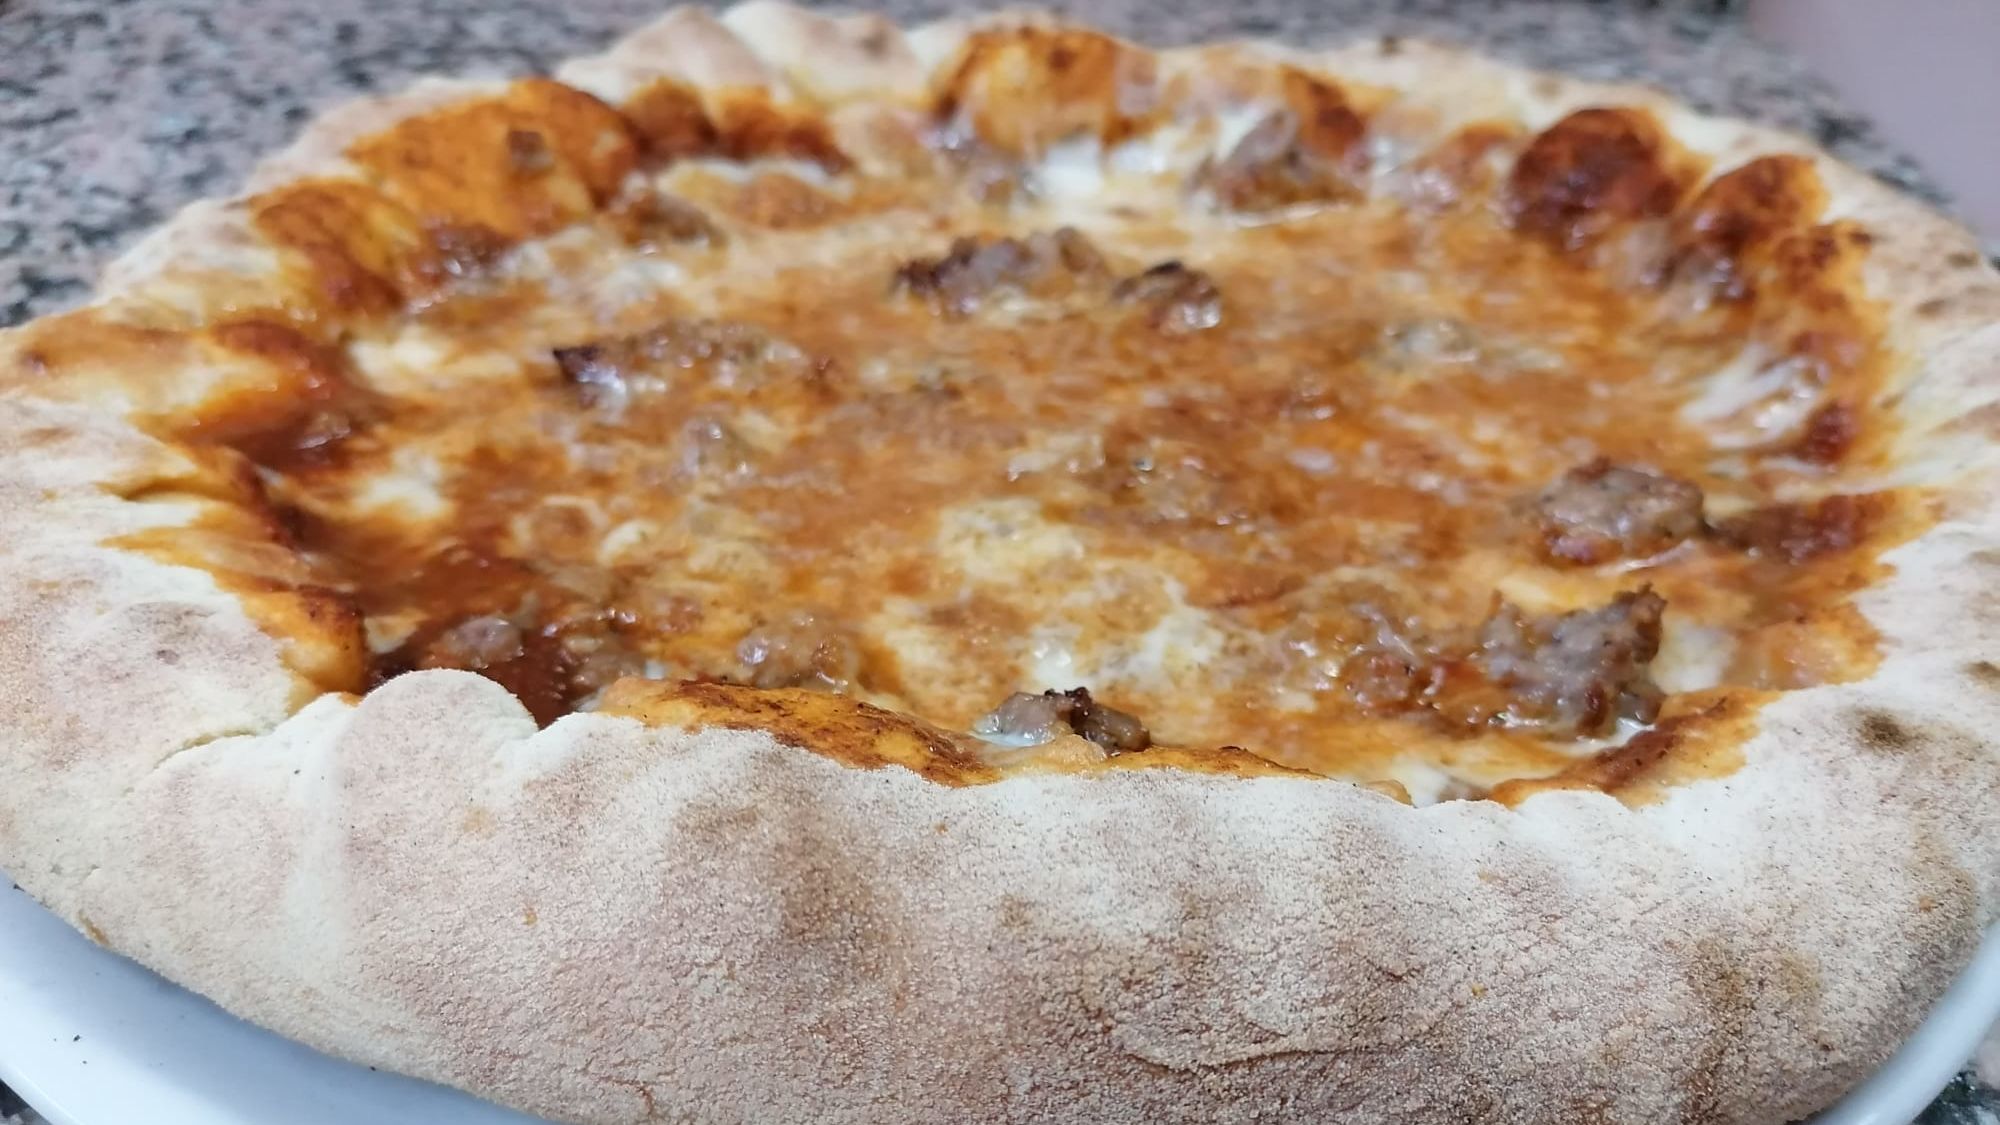 BORDO RIPIENO - Pizza Mania, Adrano